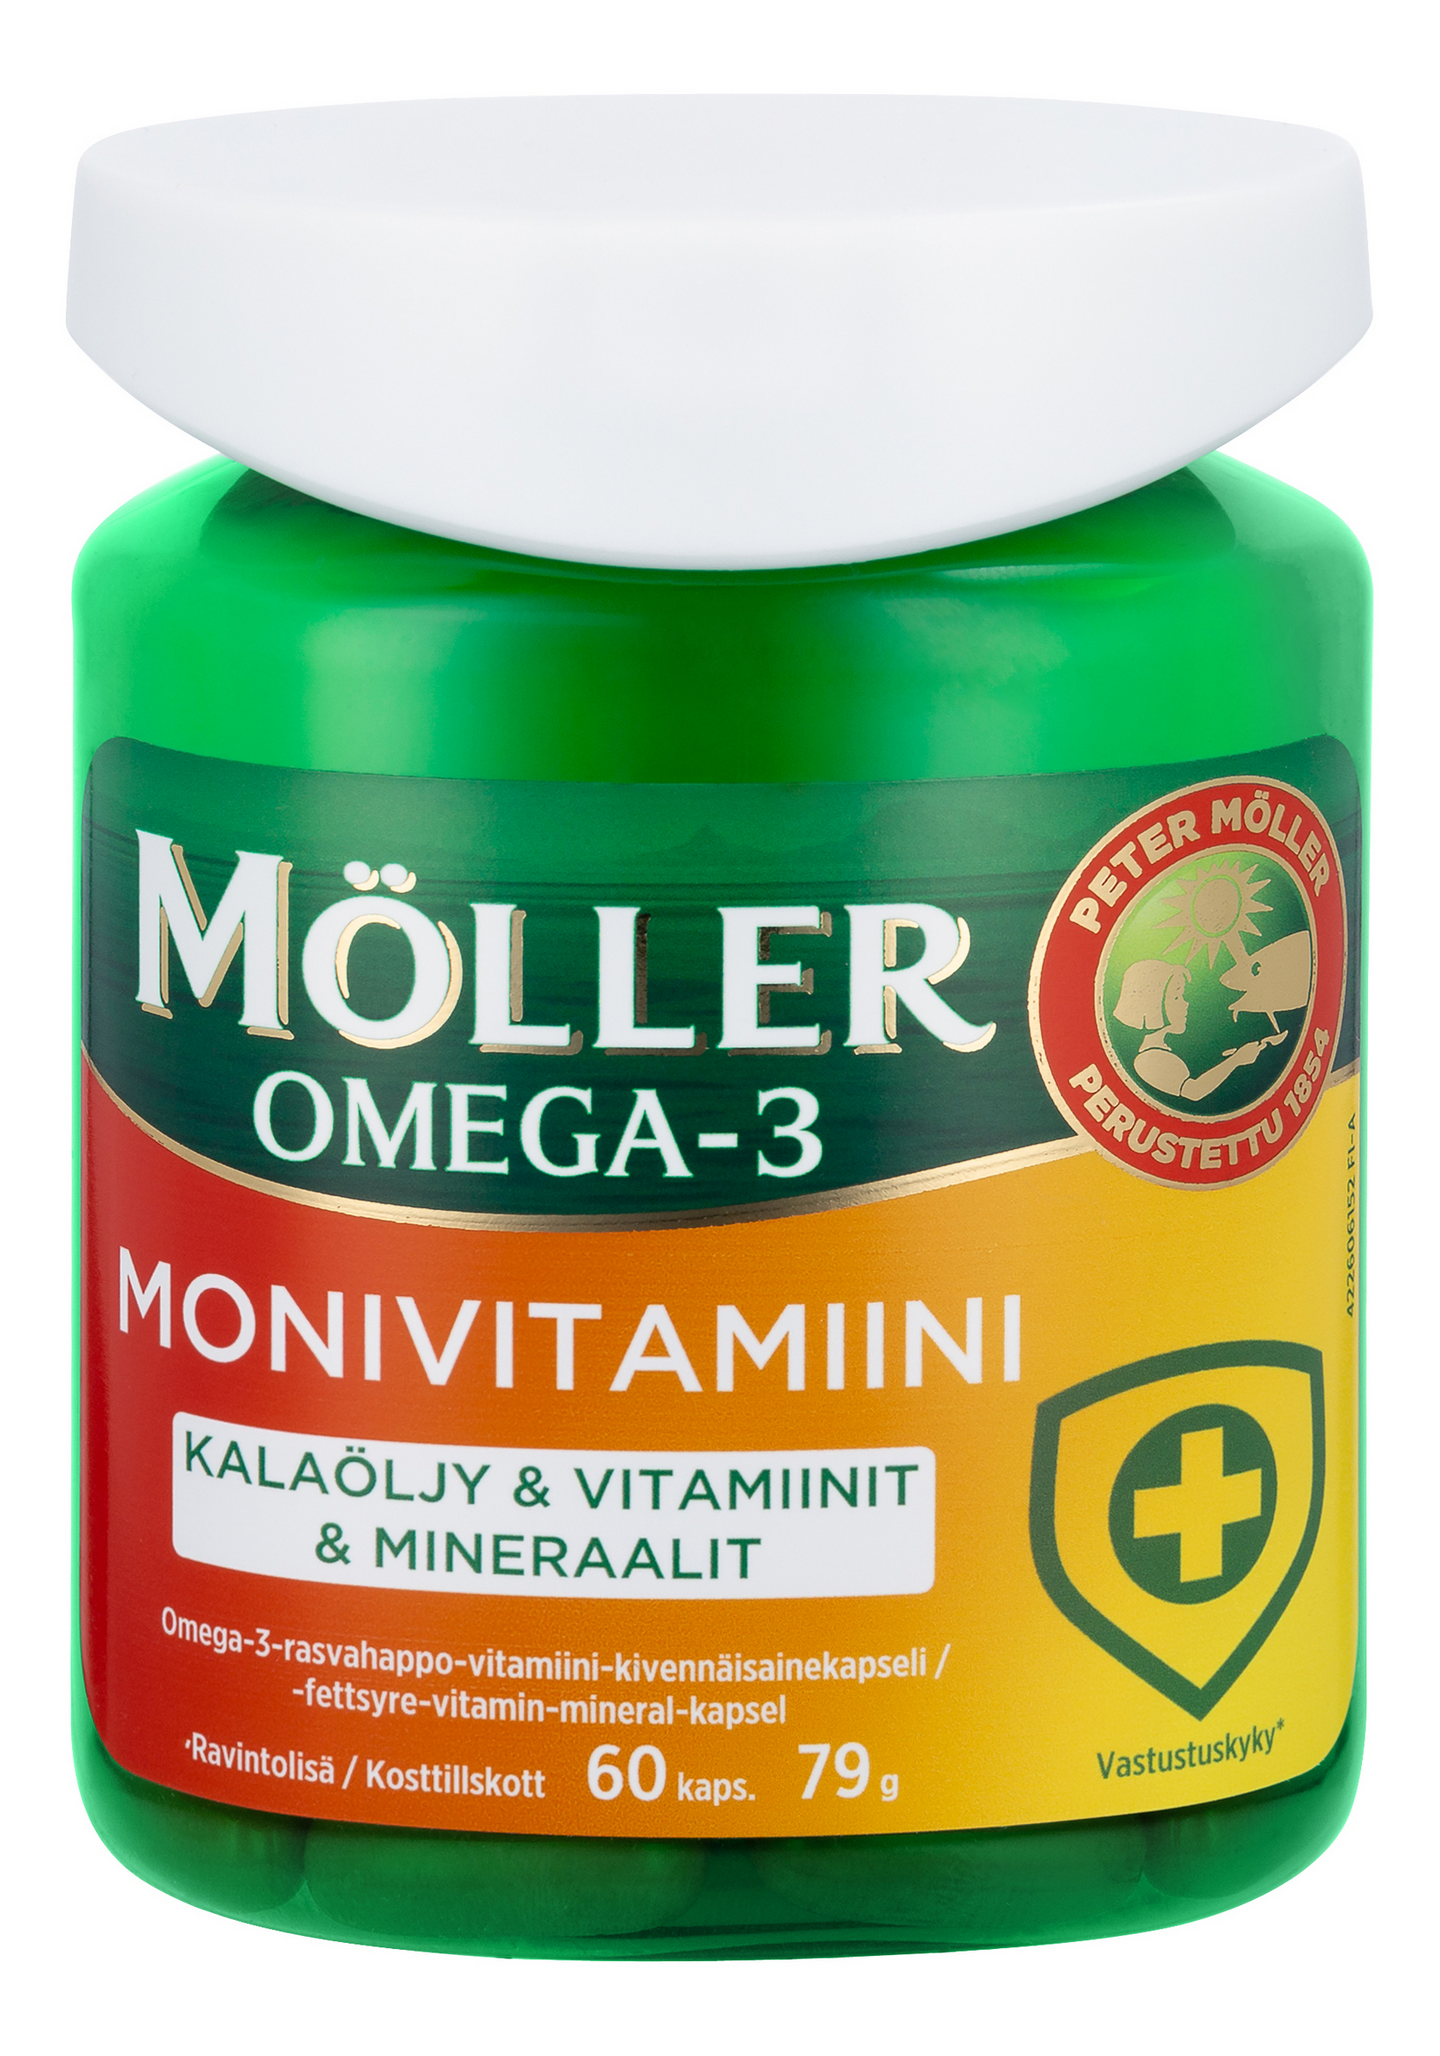 Möller Omega-3 Monivitamiini 60kaps 79g